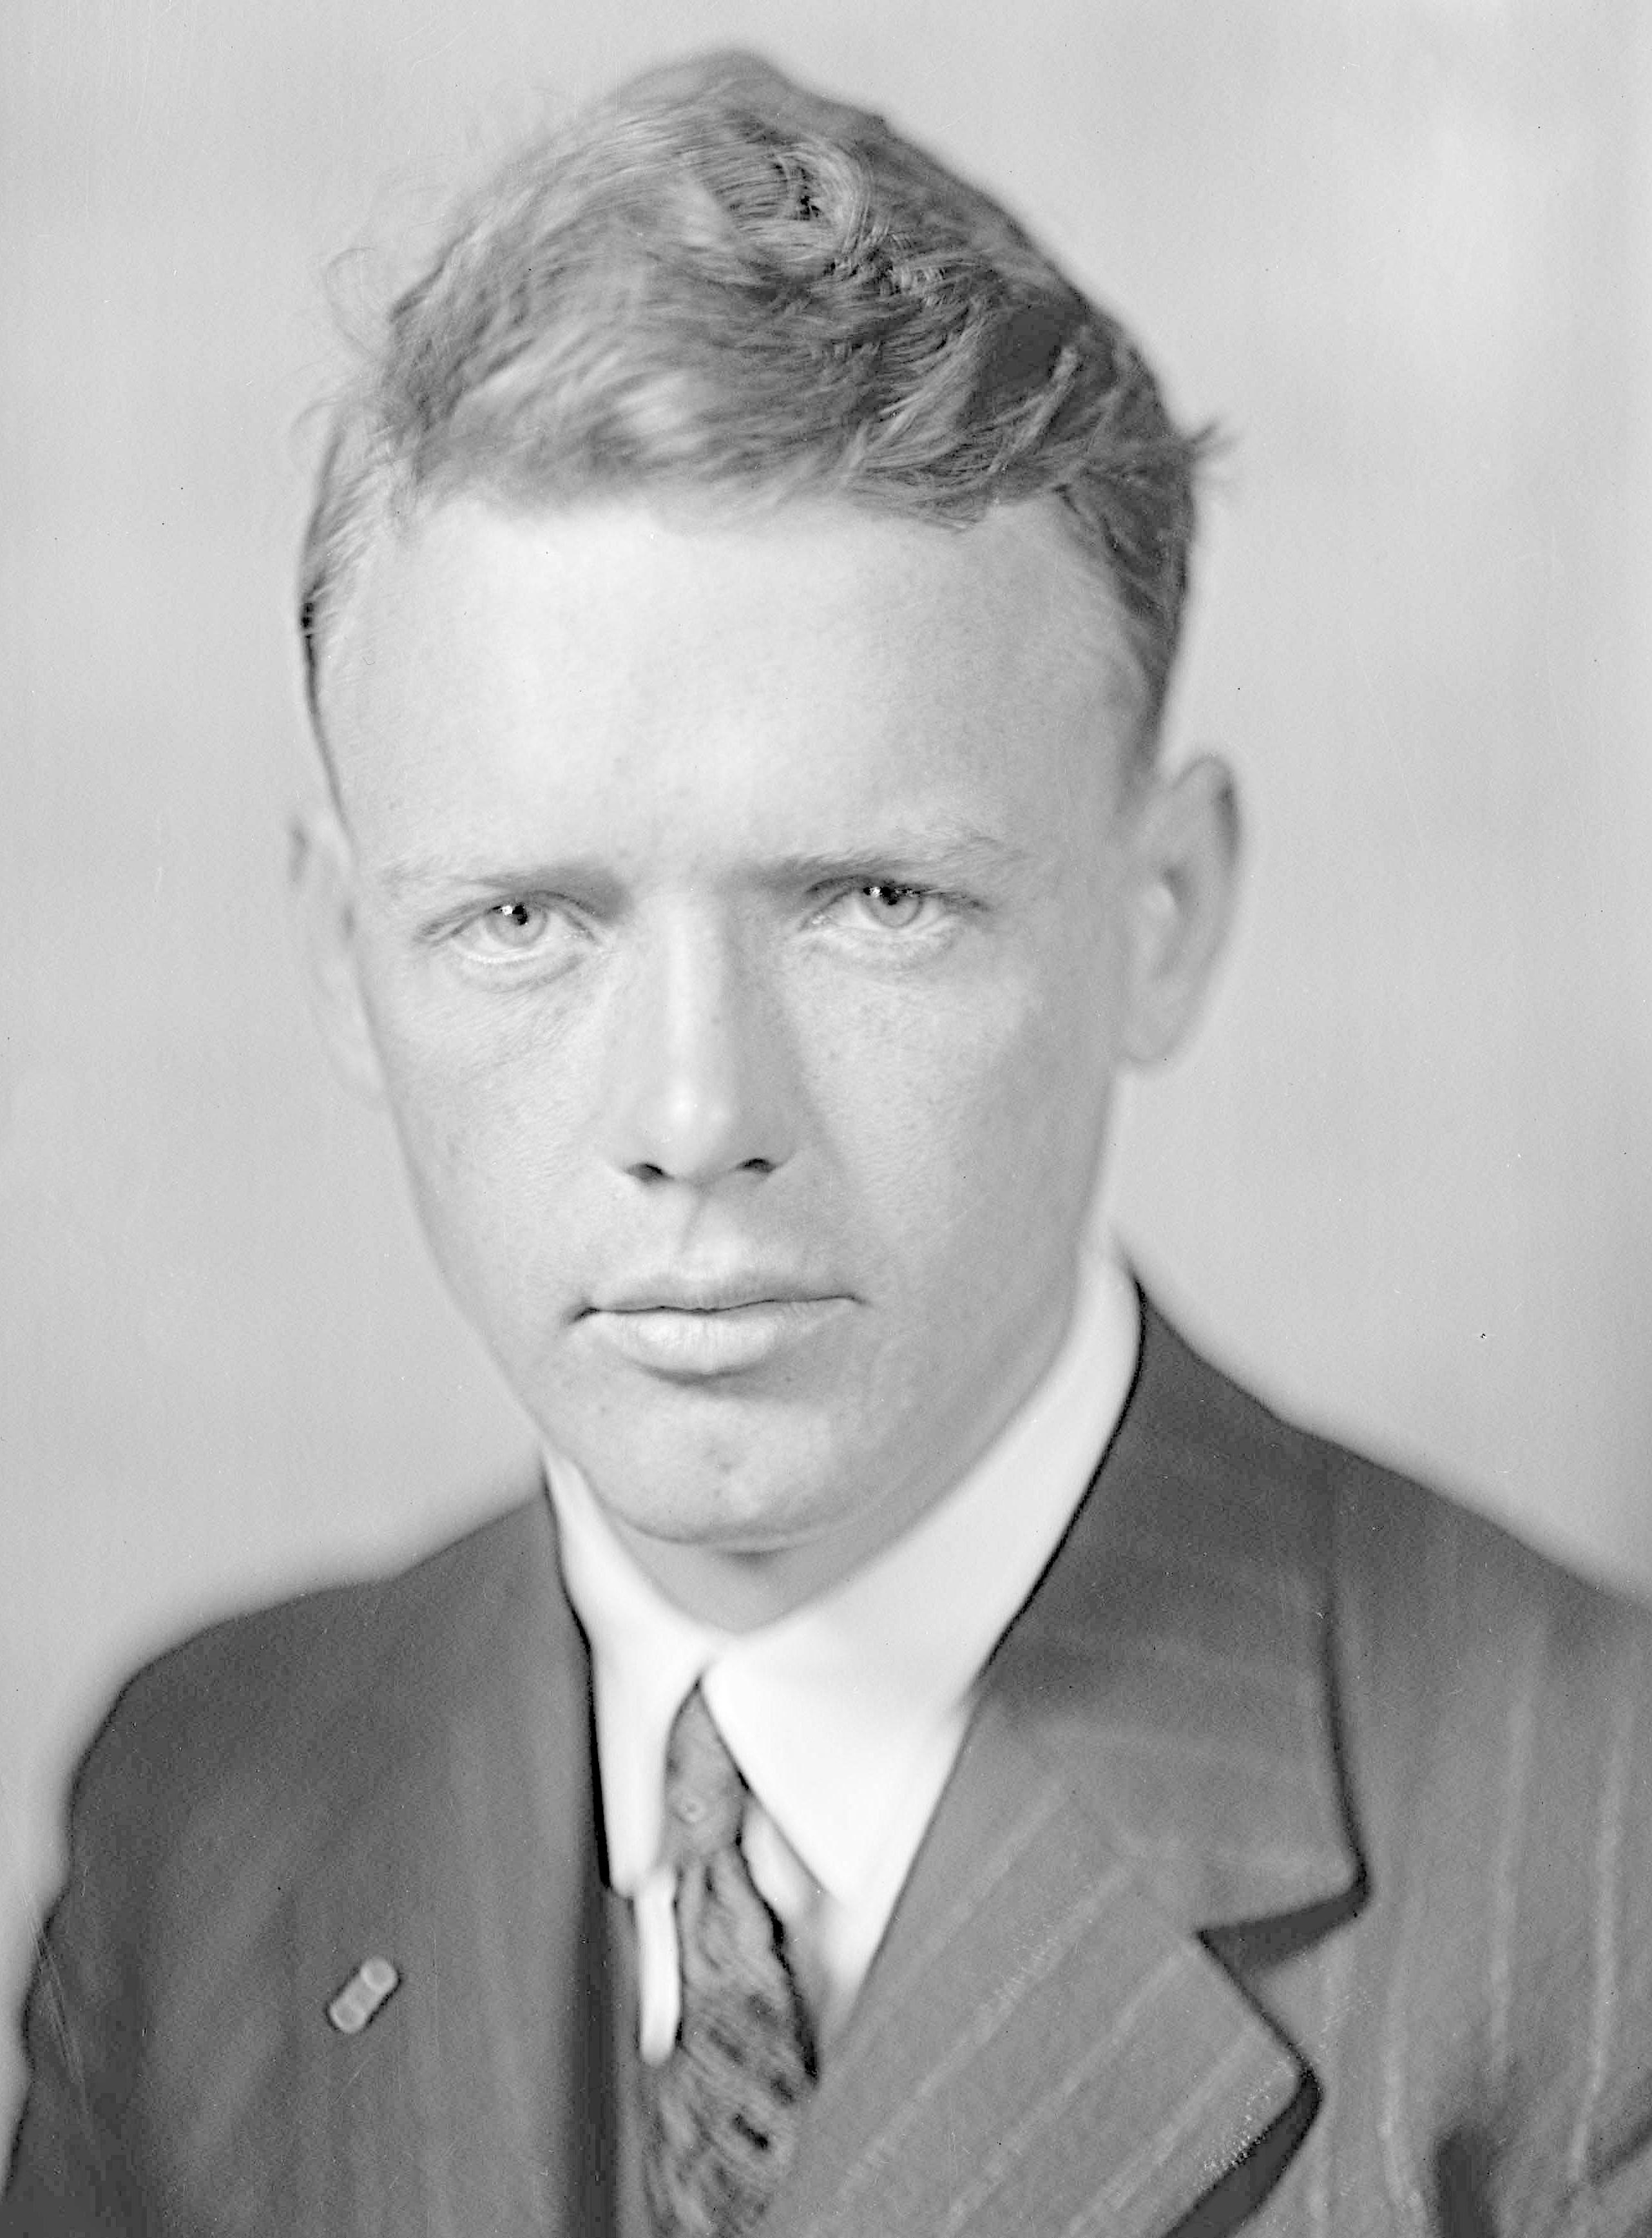 Hình ảnh về phi công Charles Lindbergh